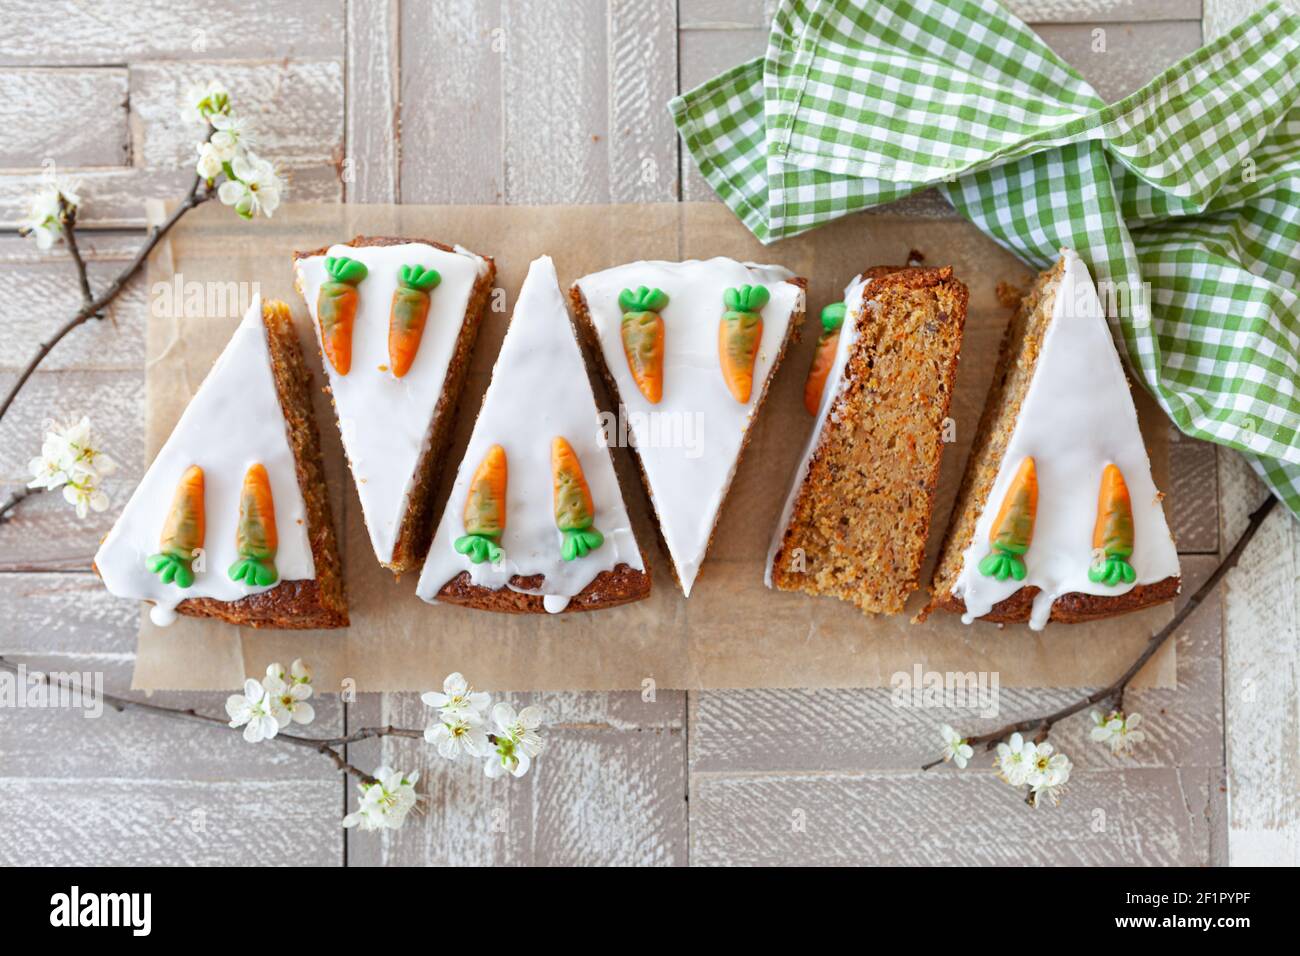 Karotte-Kuchen mit Zuckerguss Stockfoto